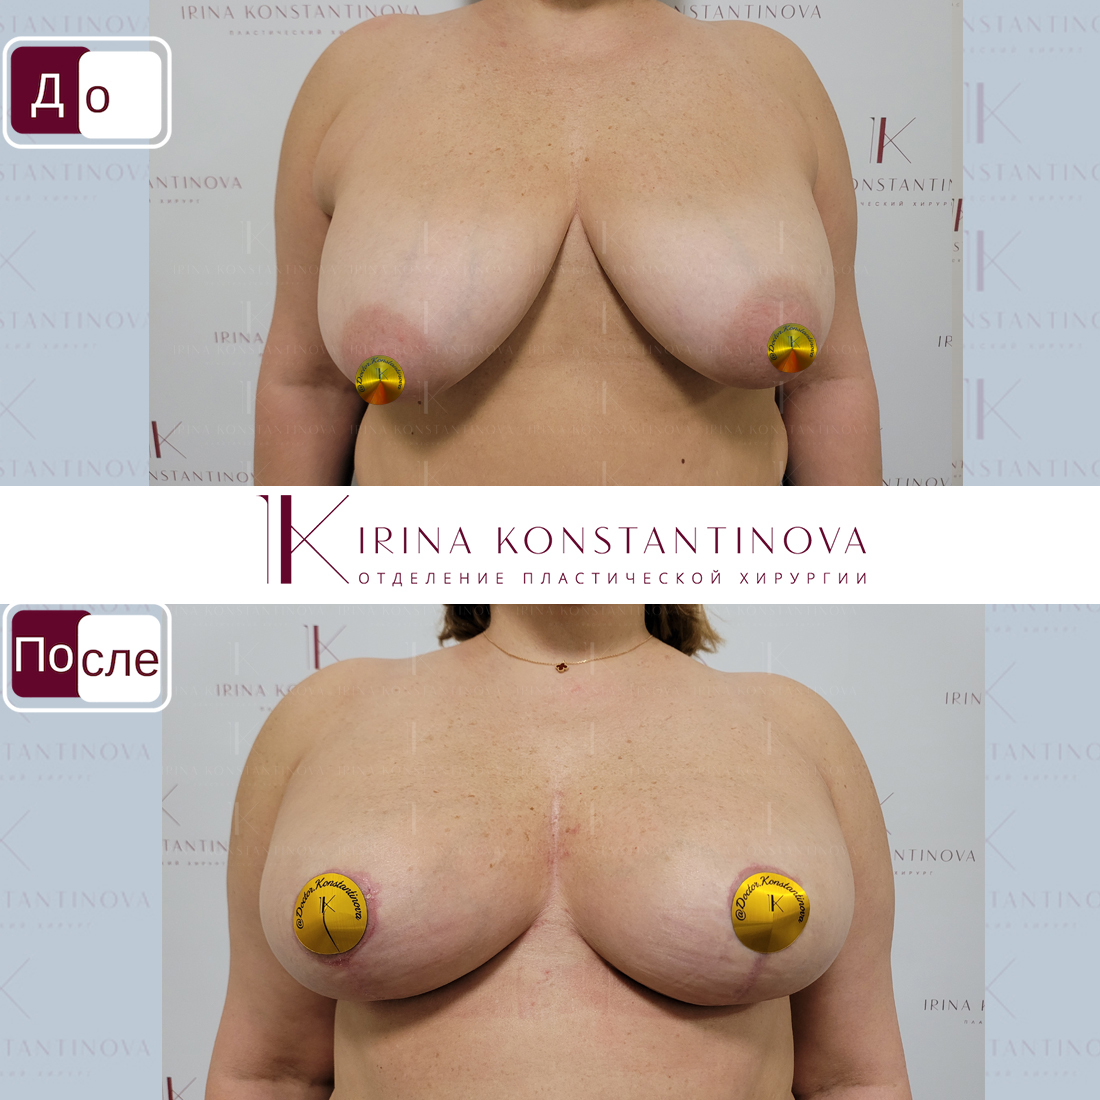 крем для уменьшения груди у женщин фото 56